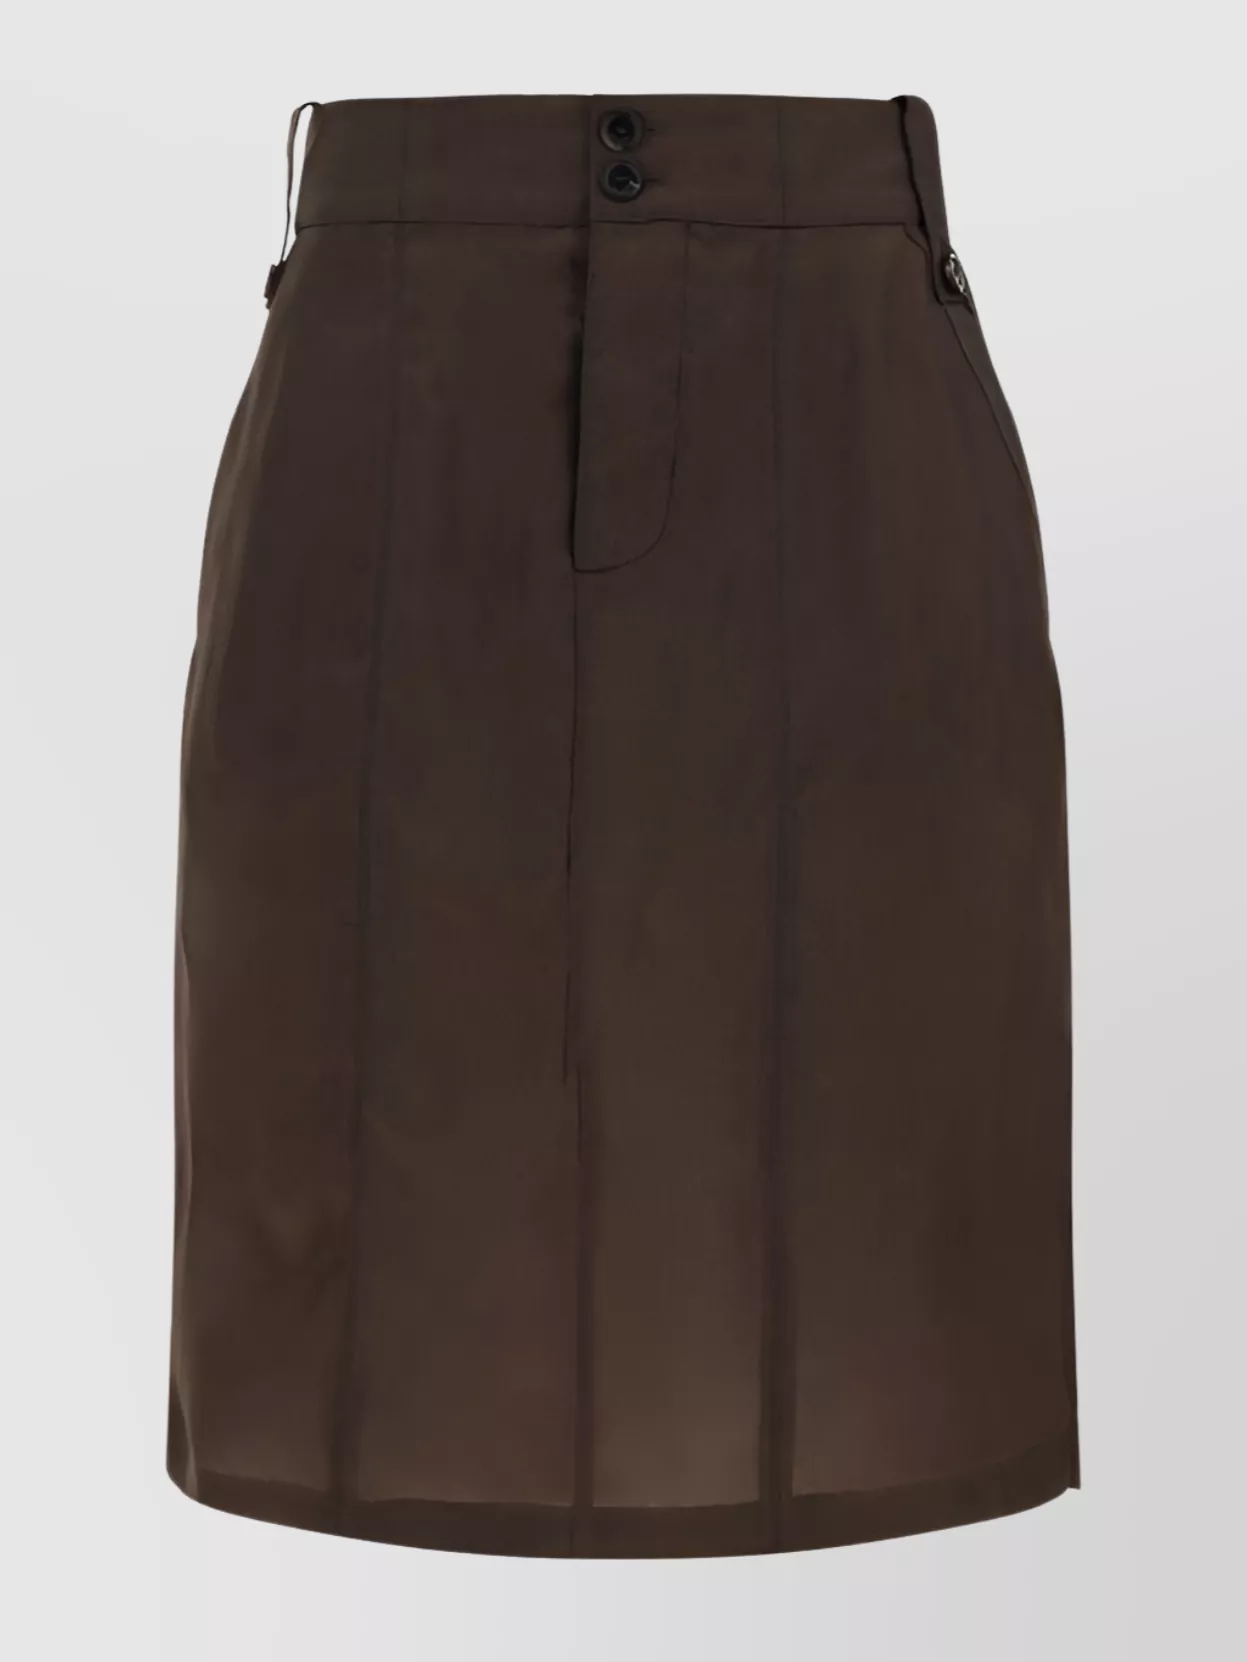 Saint Laurent Bemberg Fabric Skirt Back Pockets